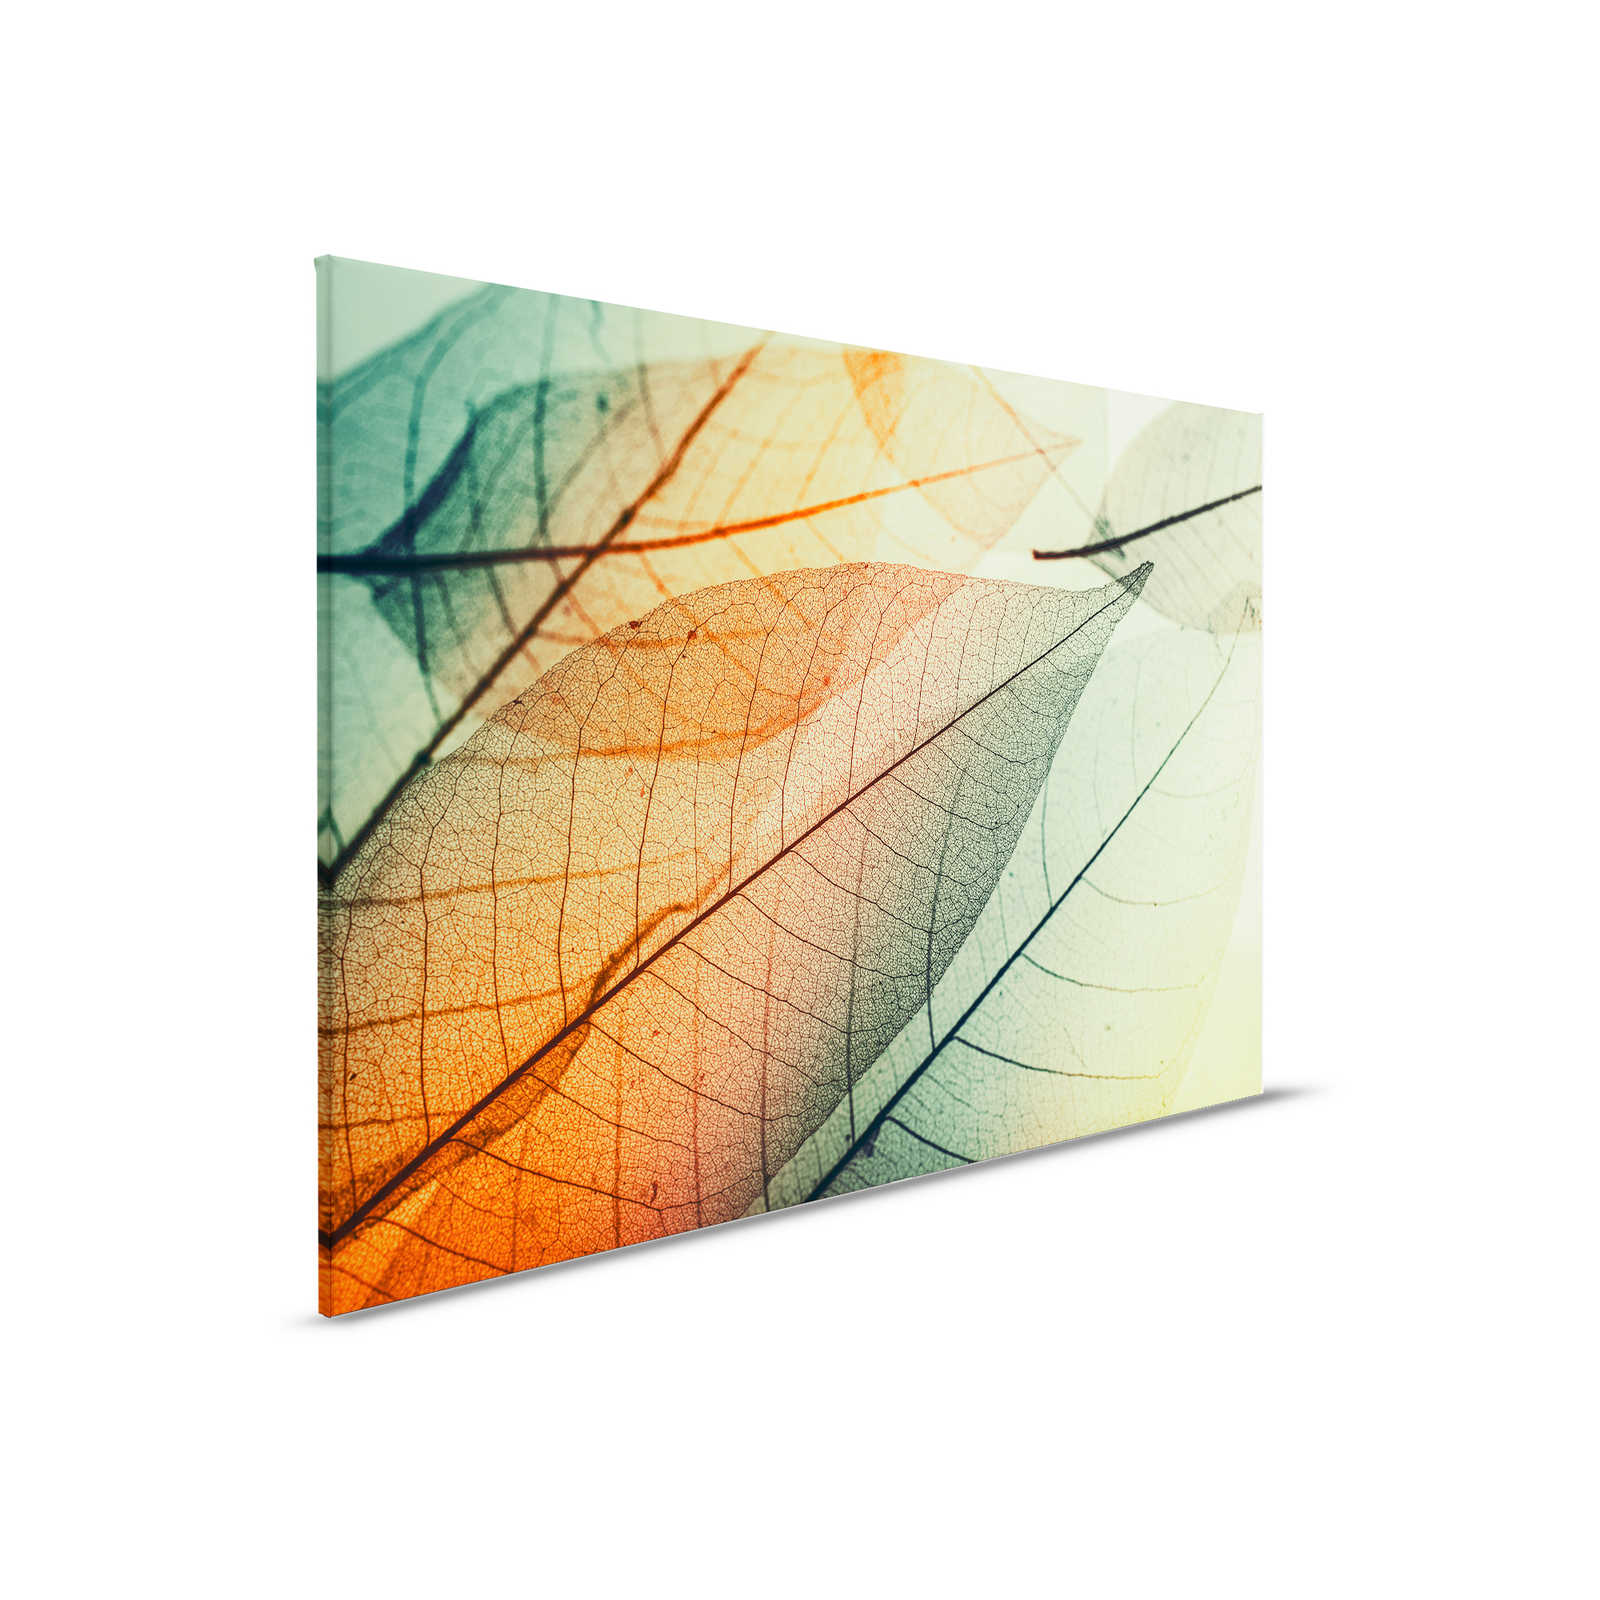         Leinwand mit Blätter-Design – 0,90 m x 0,60 m
    